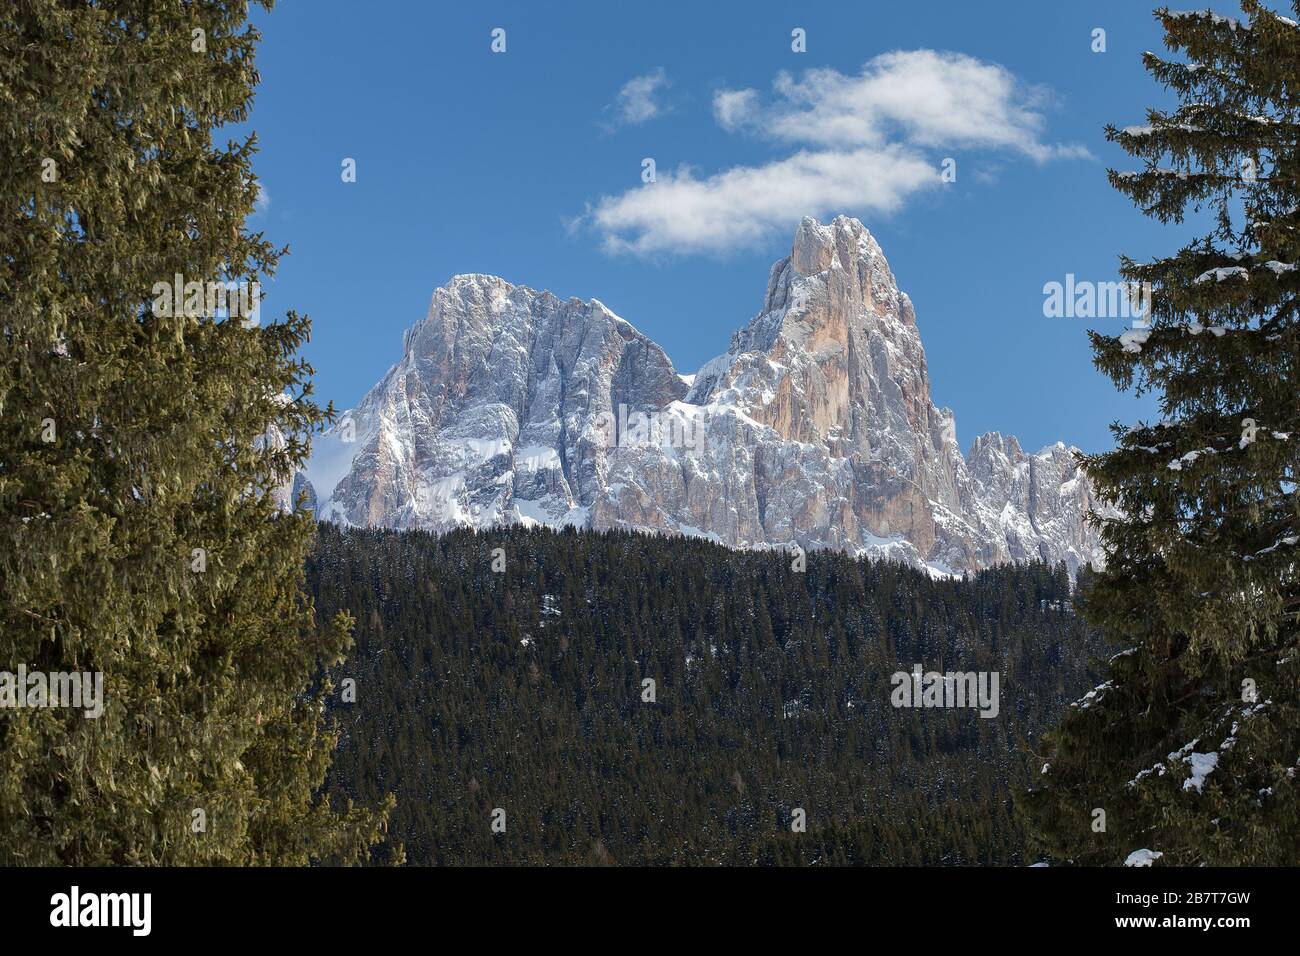 The Paneveggio coniferous forest, Pale di San Martino mountain group. Cima Vezzana and Cimon della Pala peaks. The Trentino Dolomites. Italian Alps. Stock Photo